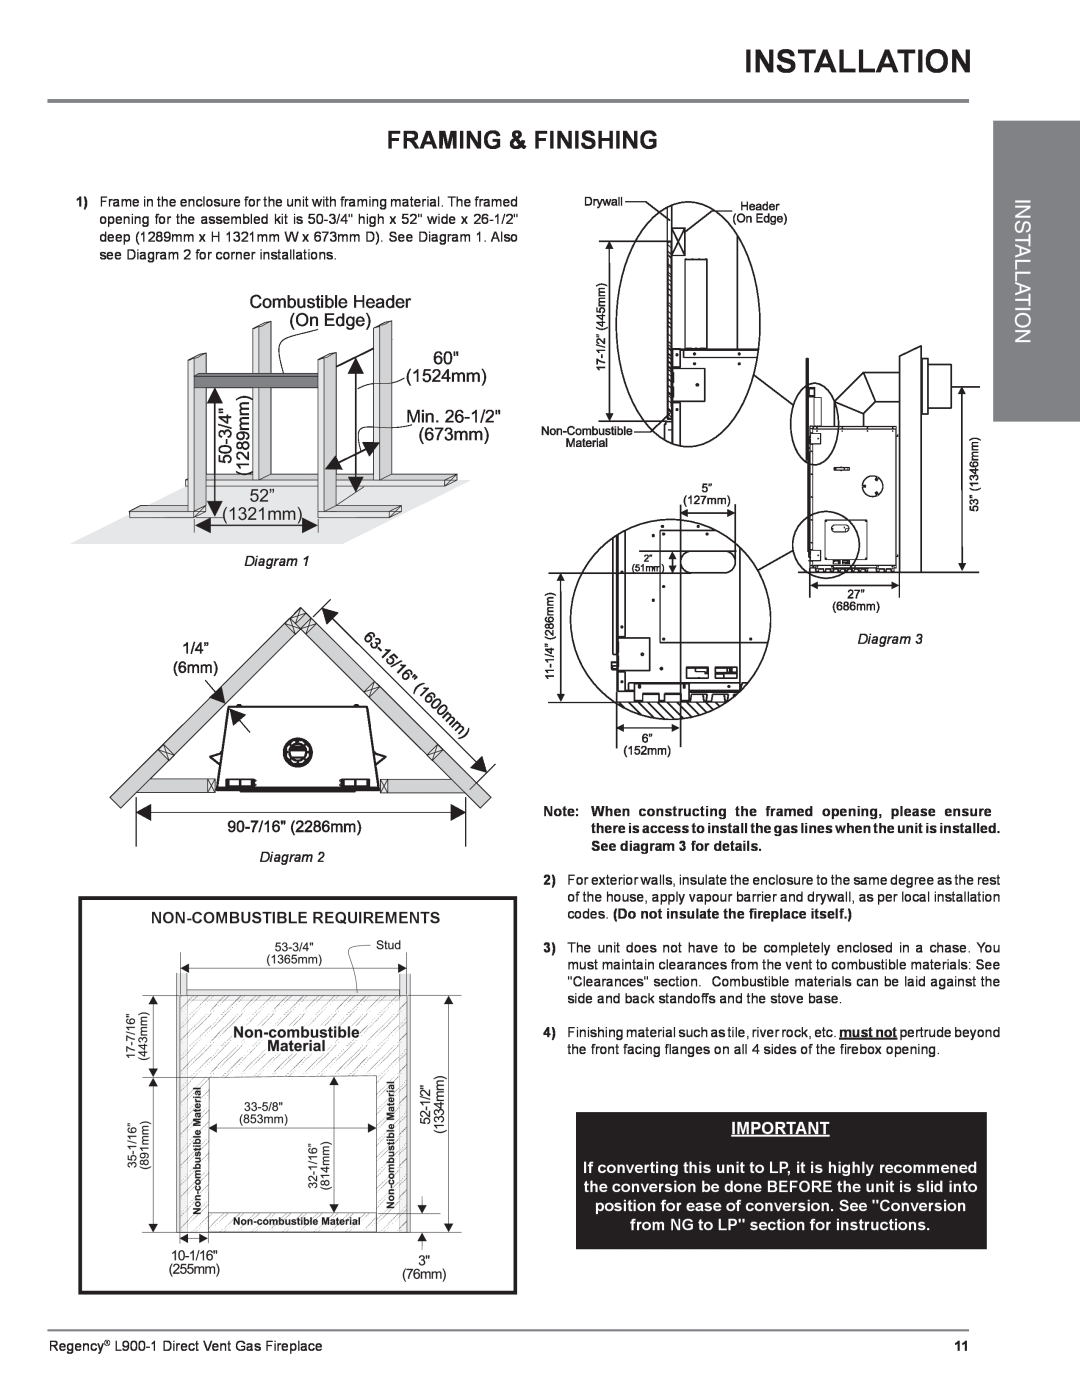 Regency L900-1 installation manual Installation, Framing & Finishing, Diagram 